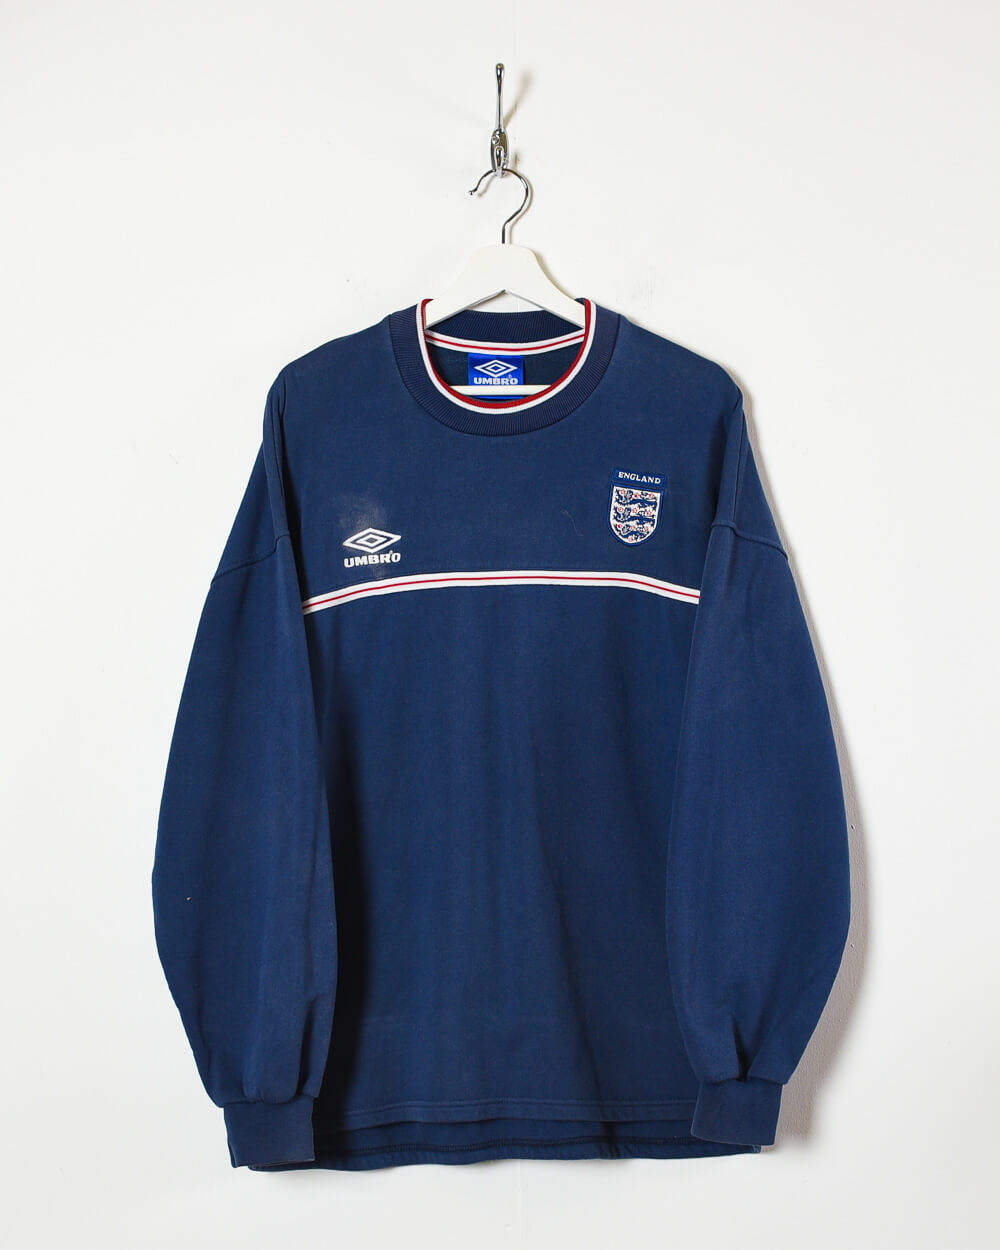 Umbro England 00s Sweatshirt - Large